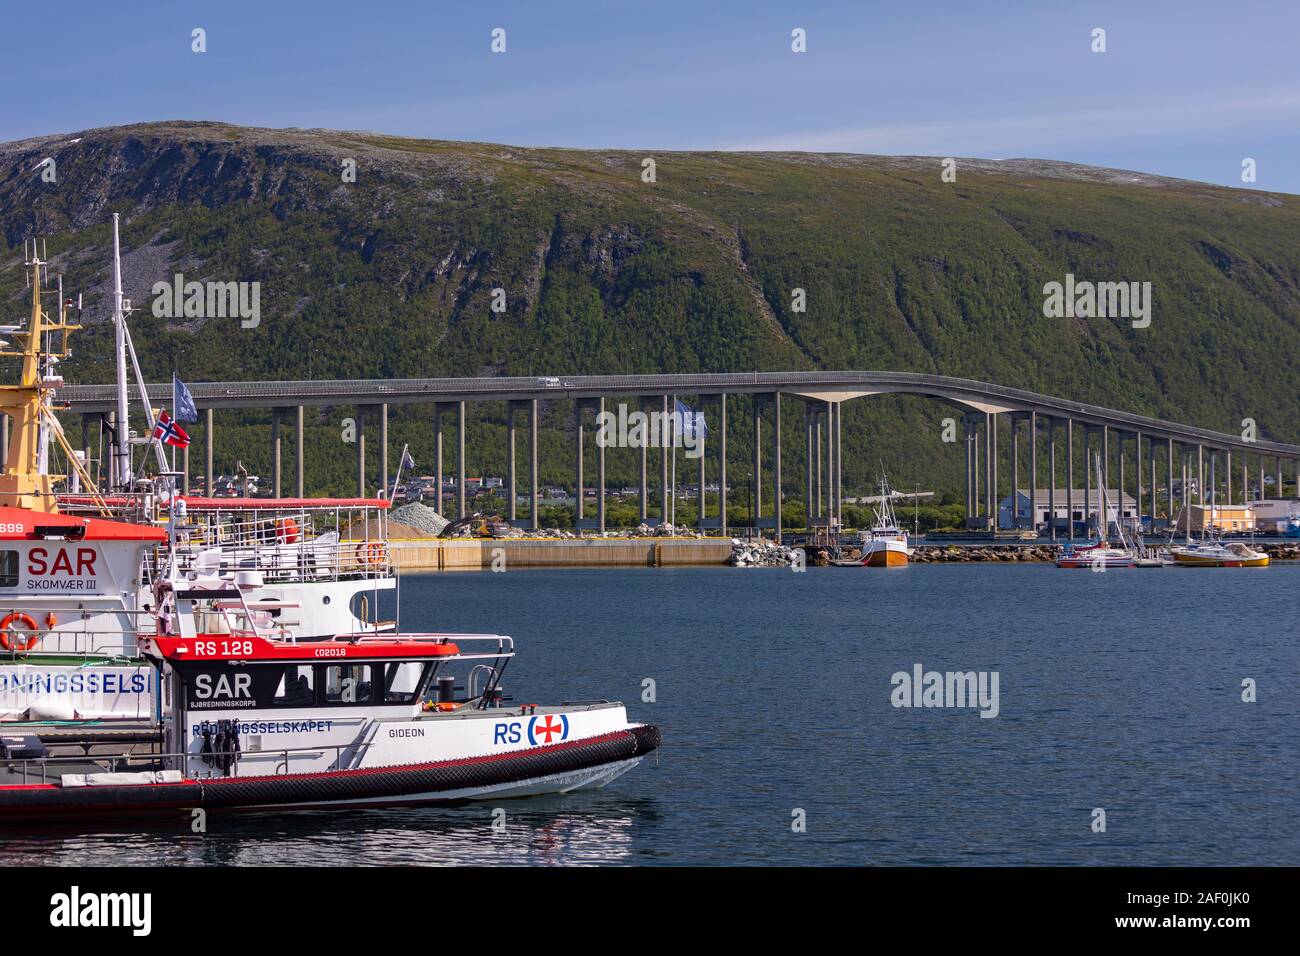 TROMSØ, NORVÈGE - bateau de sauvetage amarré au port, exploité par Redningsselskapet, la société norvégienne pour le sauvetage en mer. Dans la distance. Pont de Tromsø traverse ov Banque D'Images